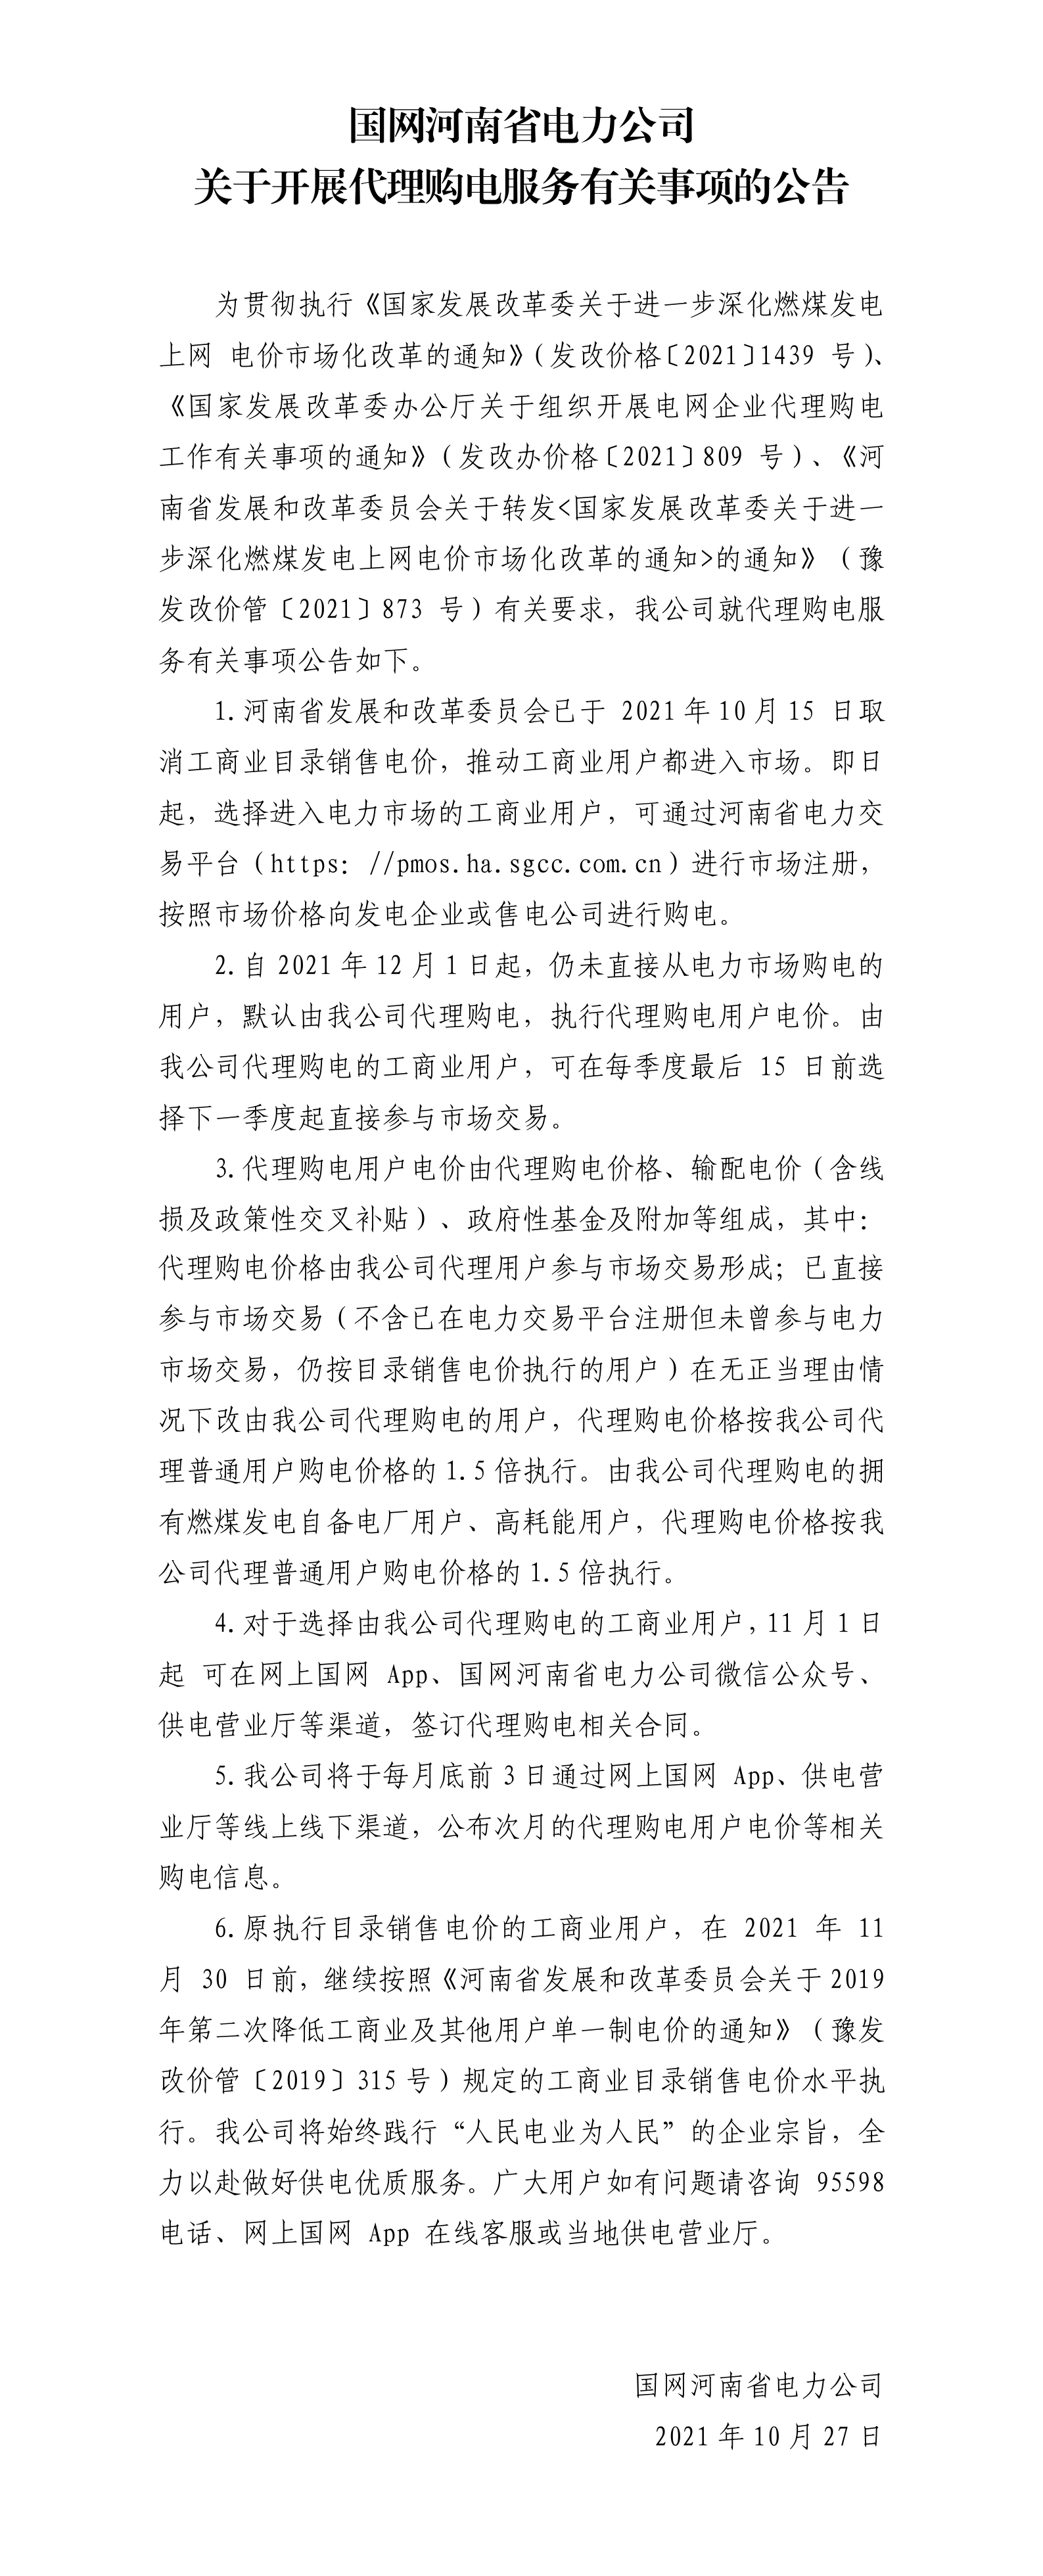 国网河南省电力公司%0D%0A关于开展代理购电服务有关事项的公告.png